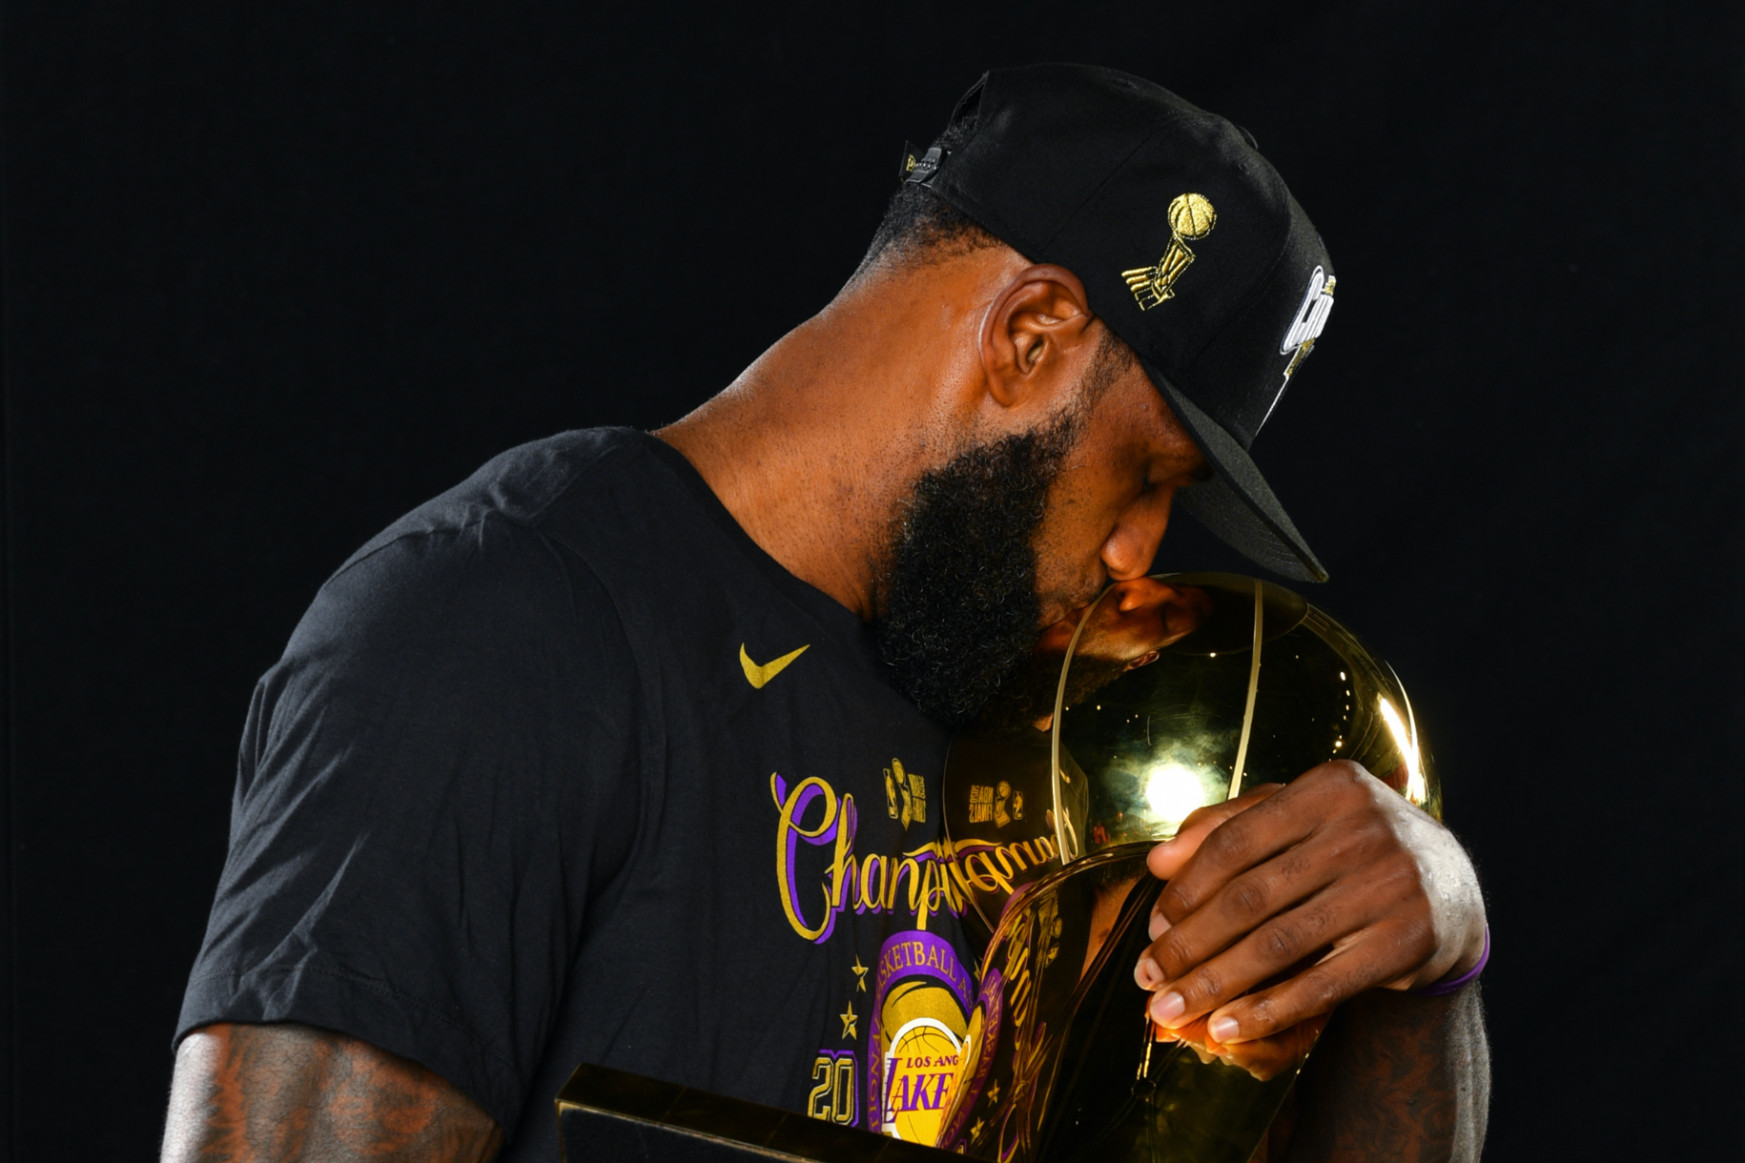 Tizenhetedszer is NBA-bajnok a Lakers